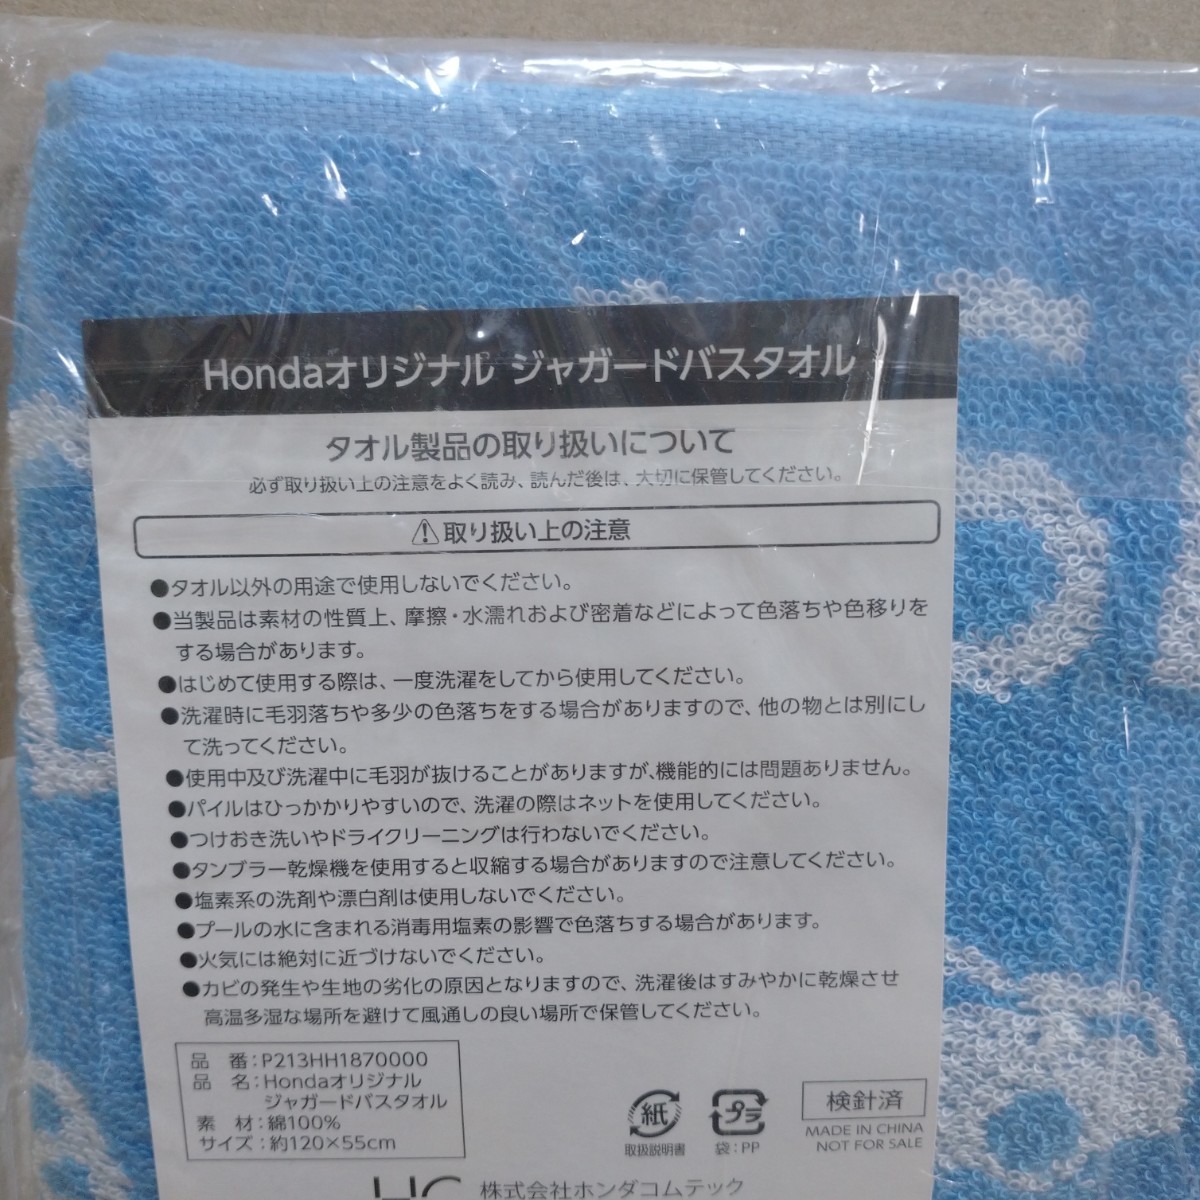 HONDA не продается банное полотенце полотенце Logo машина рисунок Honda новые товары коллекция эмблема ограничение car limited collection towel